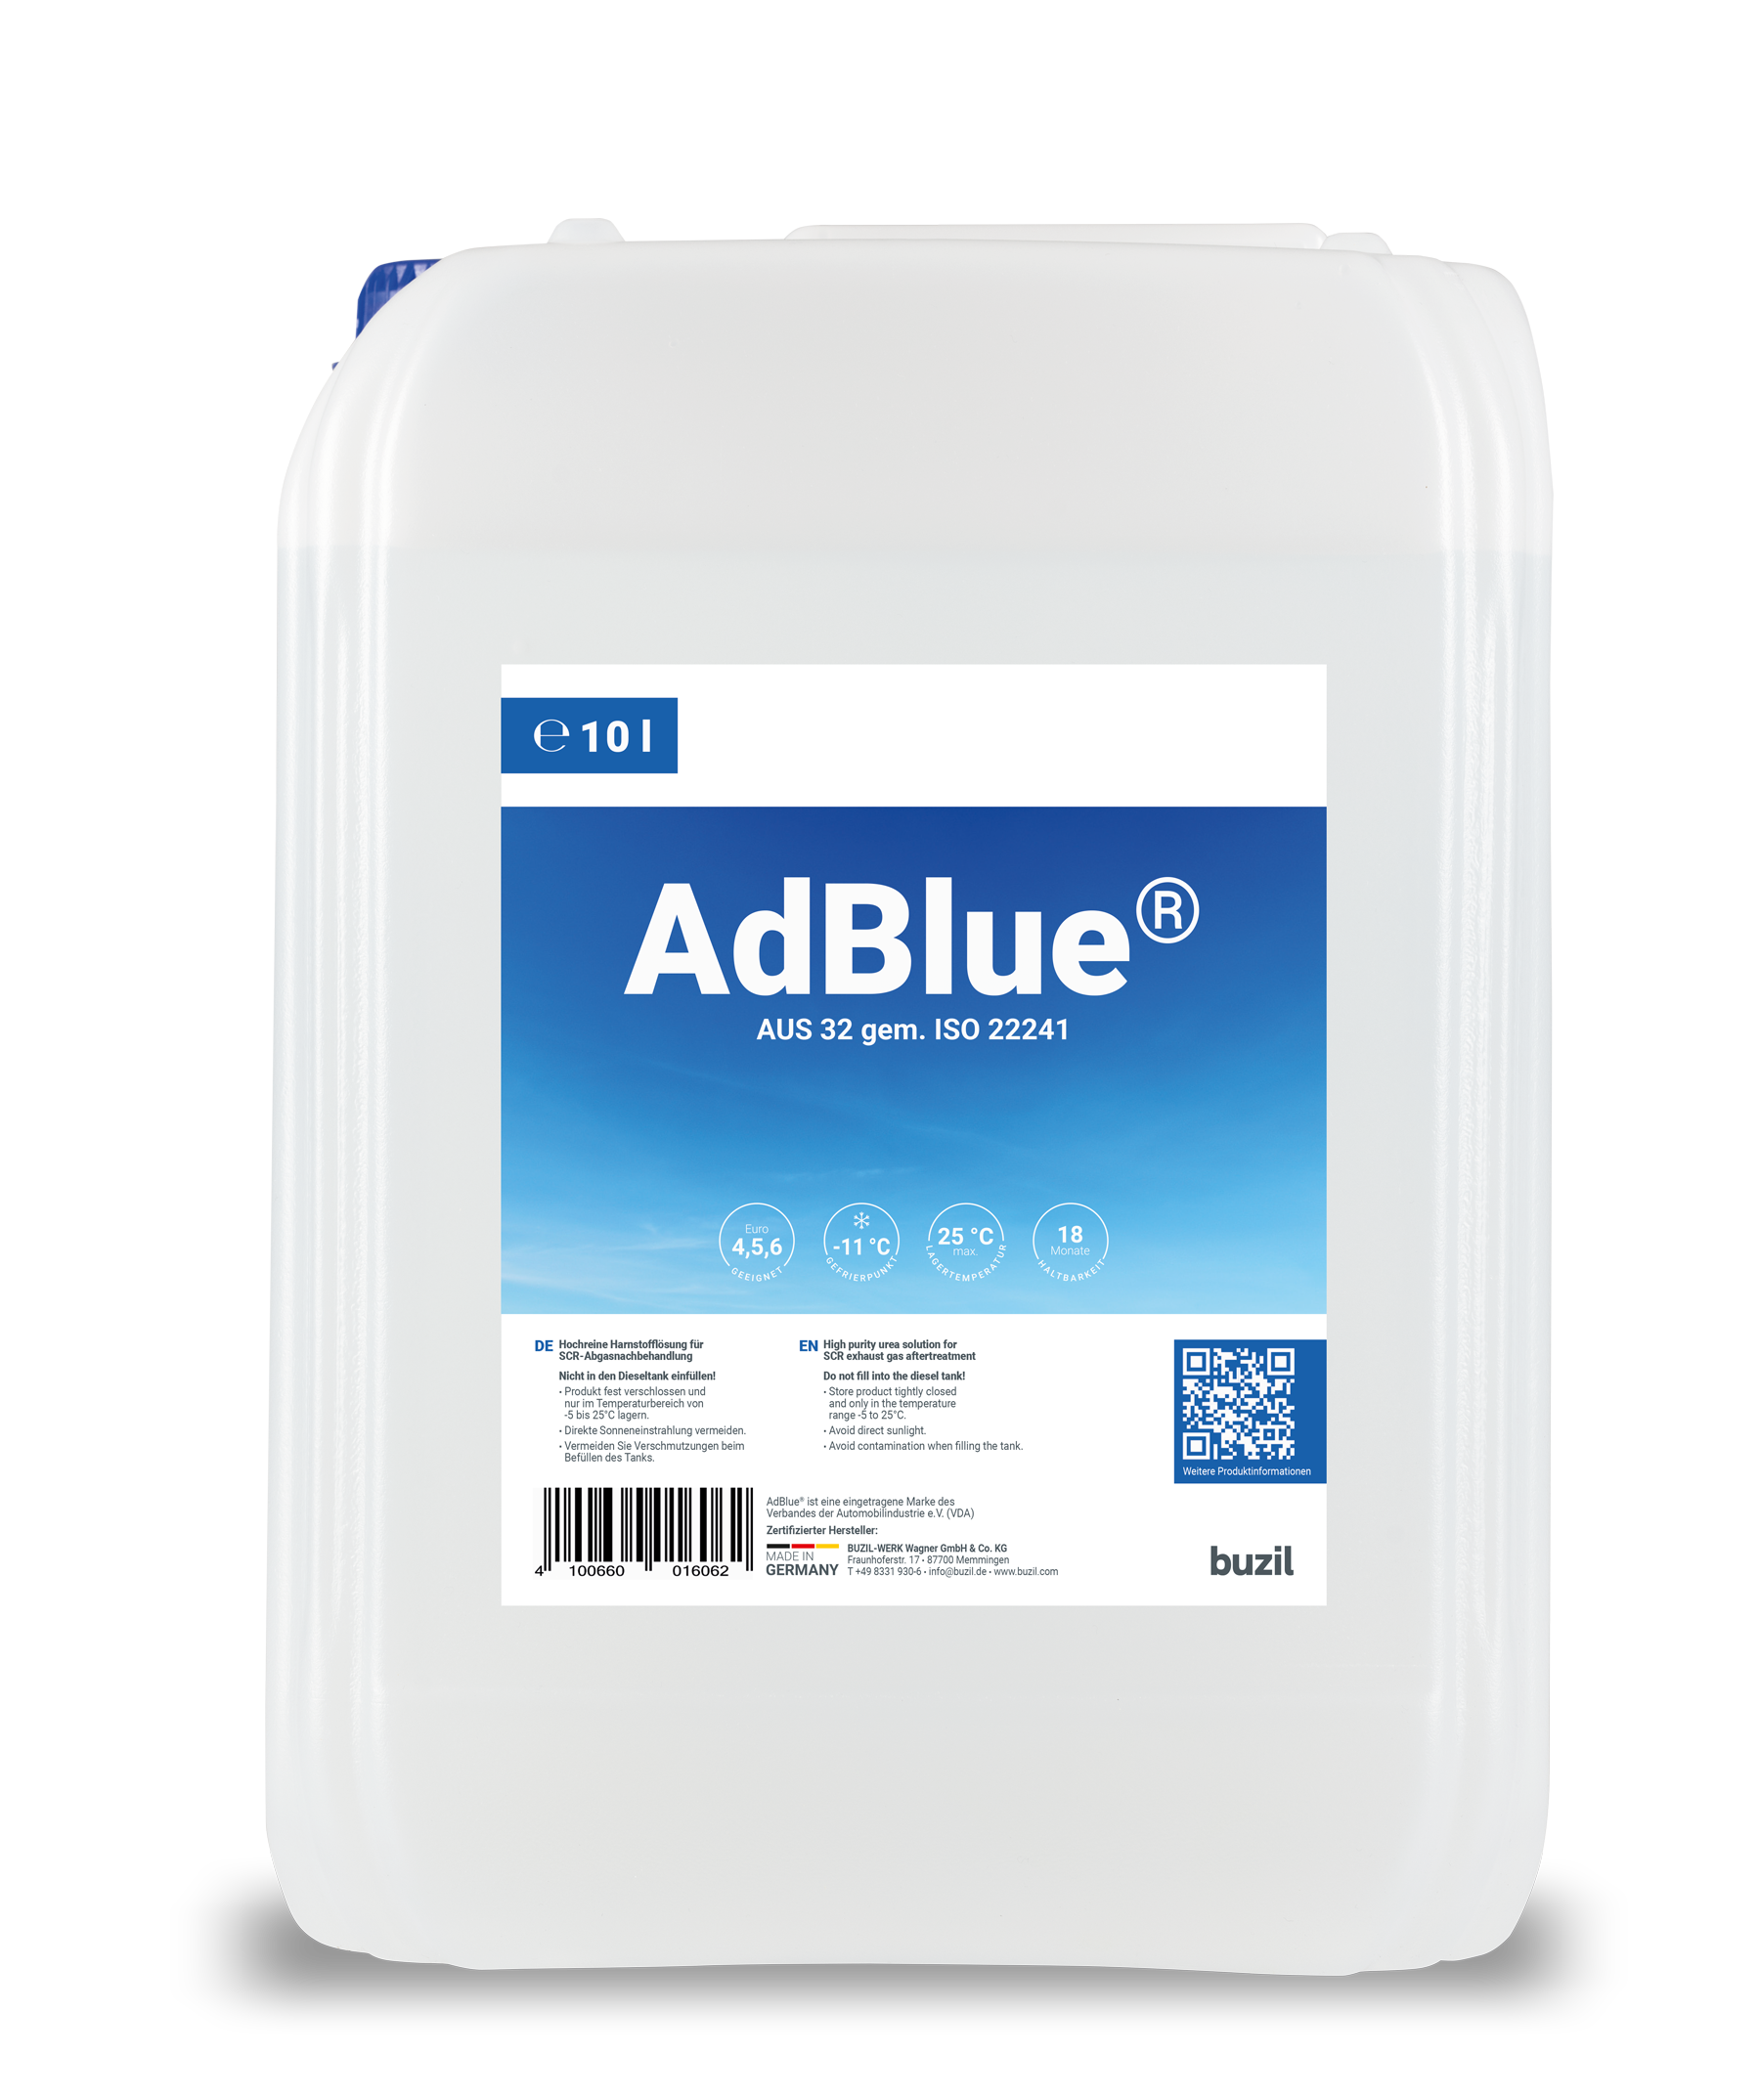 Comment est fabriqué l'AdBlue ?